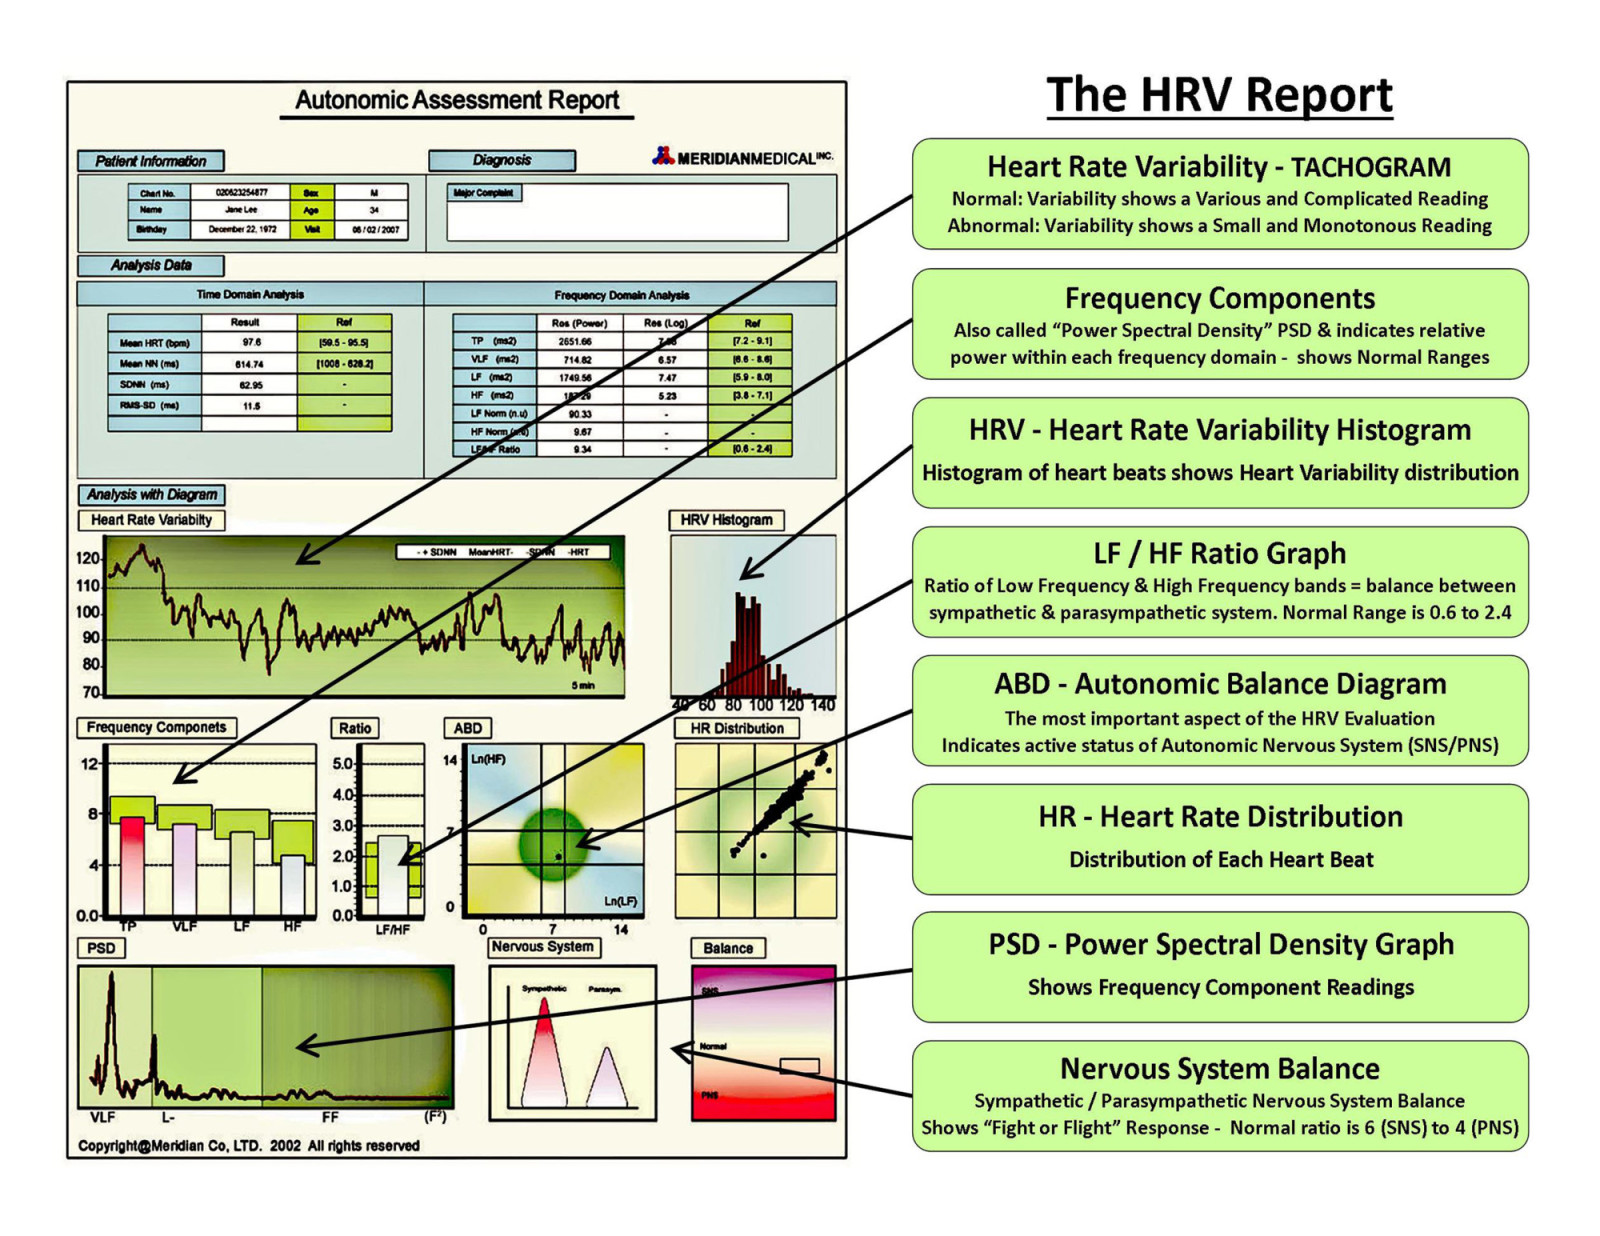 2-HRV Report - Summary